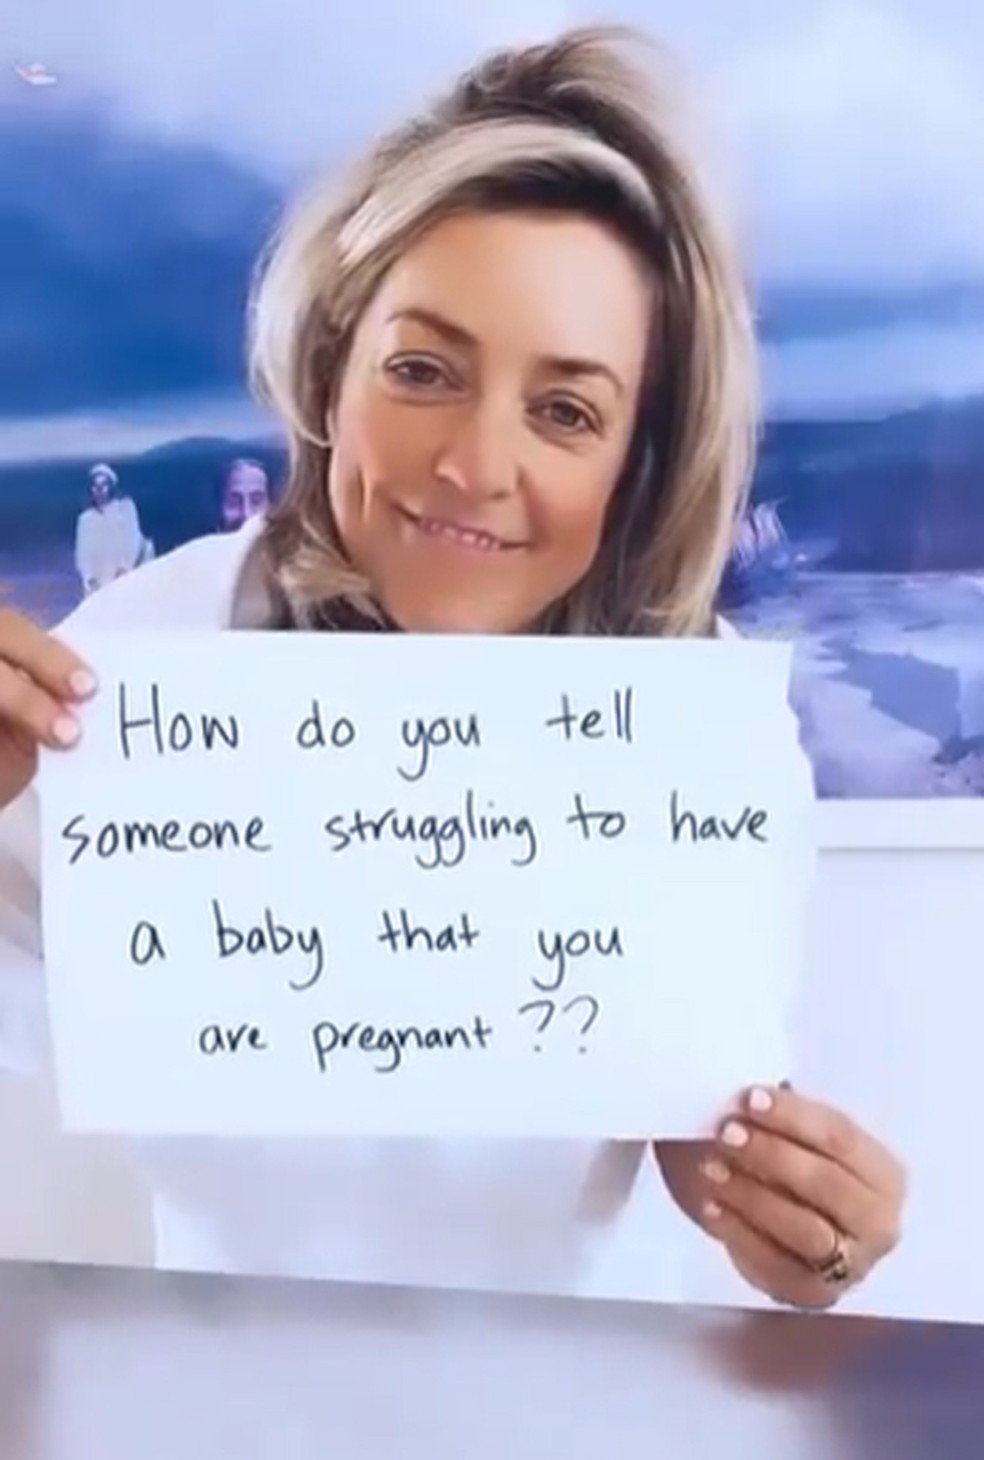 Coach de fertilidade grava vídeo para  dar dicas sobre como contar da gravidez de forma empática — Foto: Reprodução/Facebook Fertility Hand